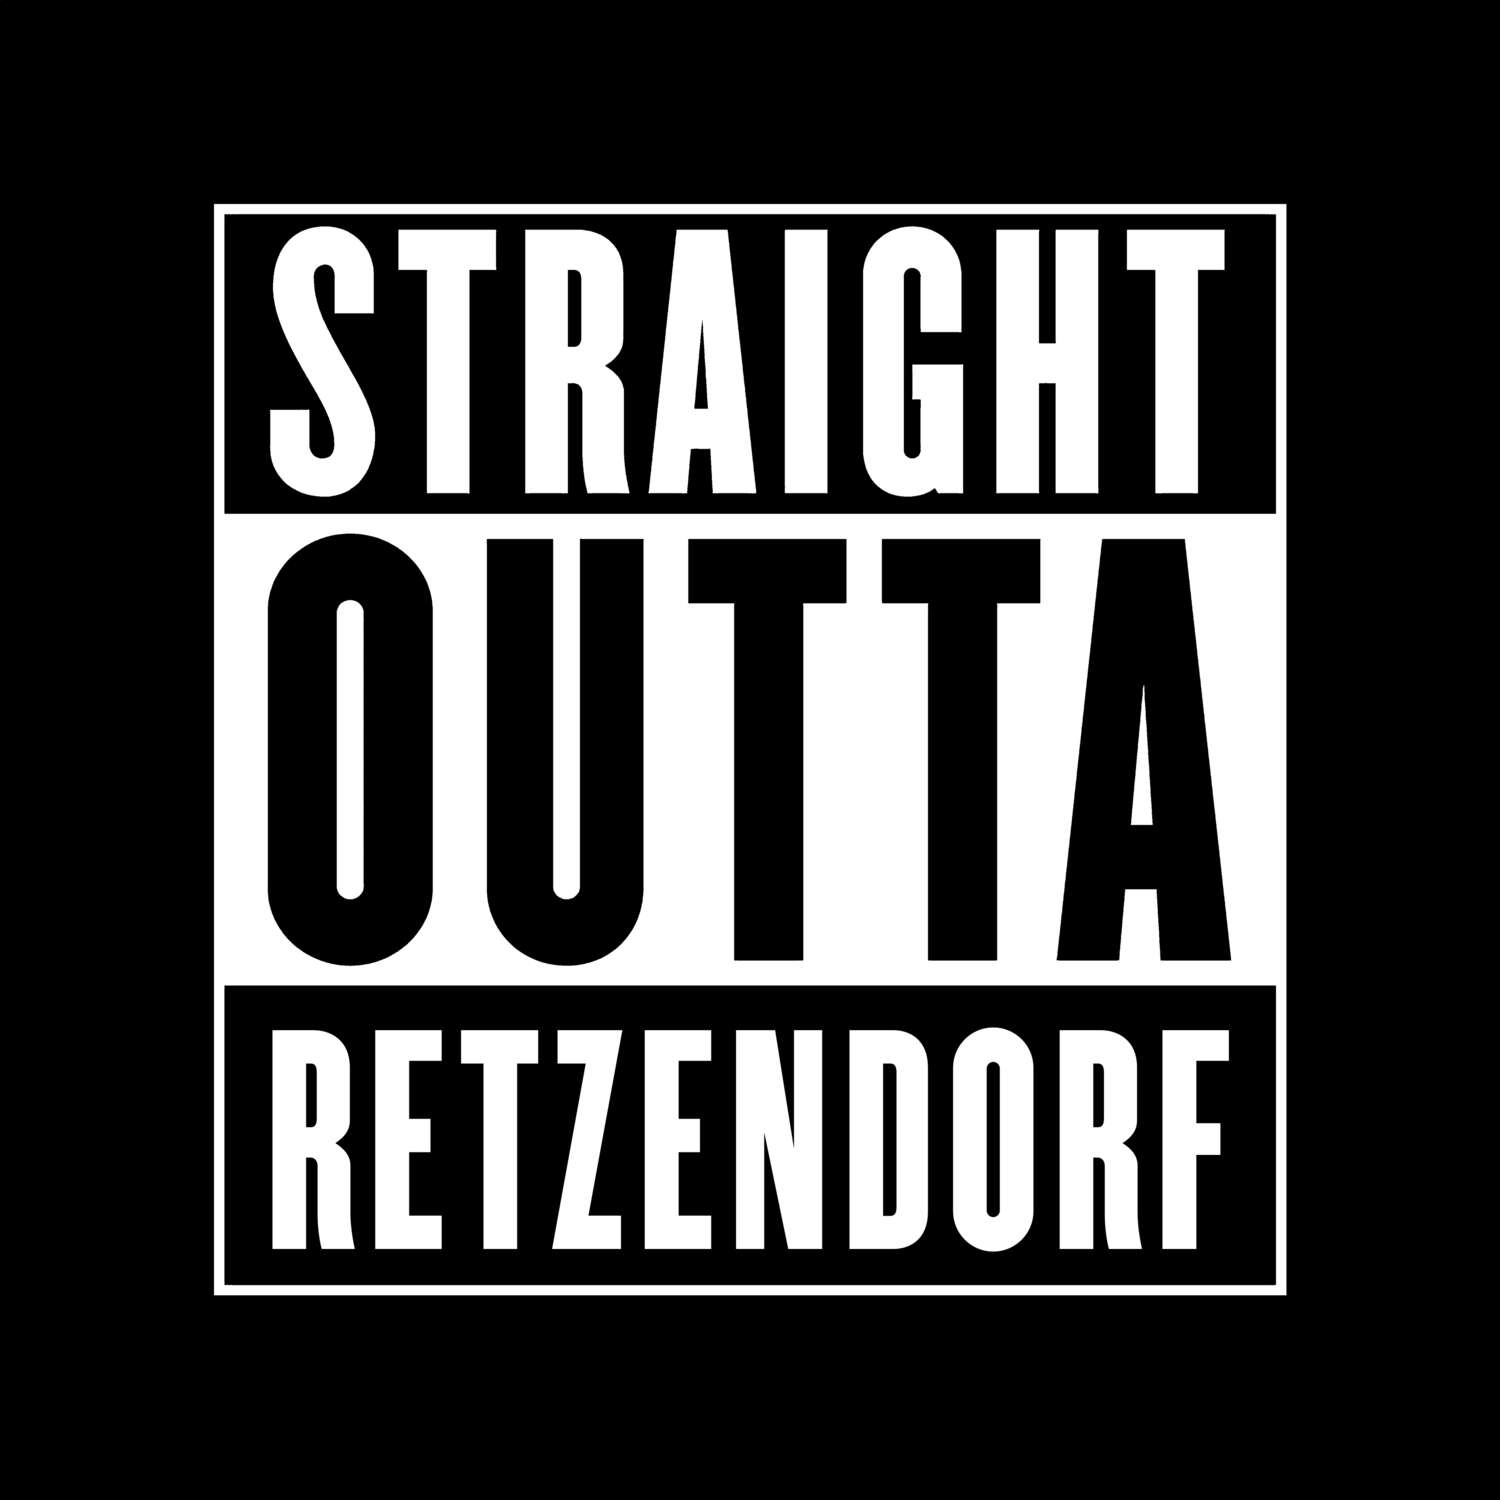 Retzendorf T-Shirt »Straight Outta«